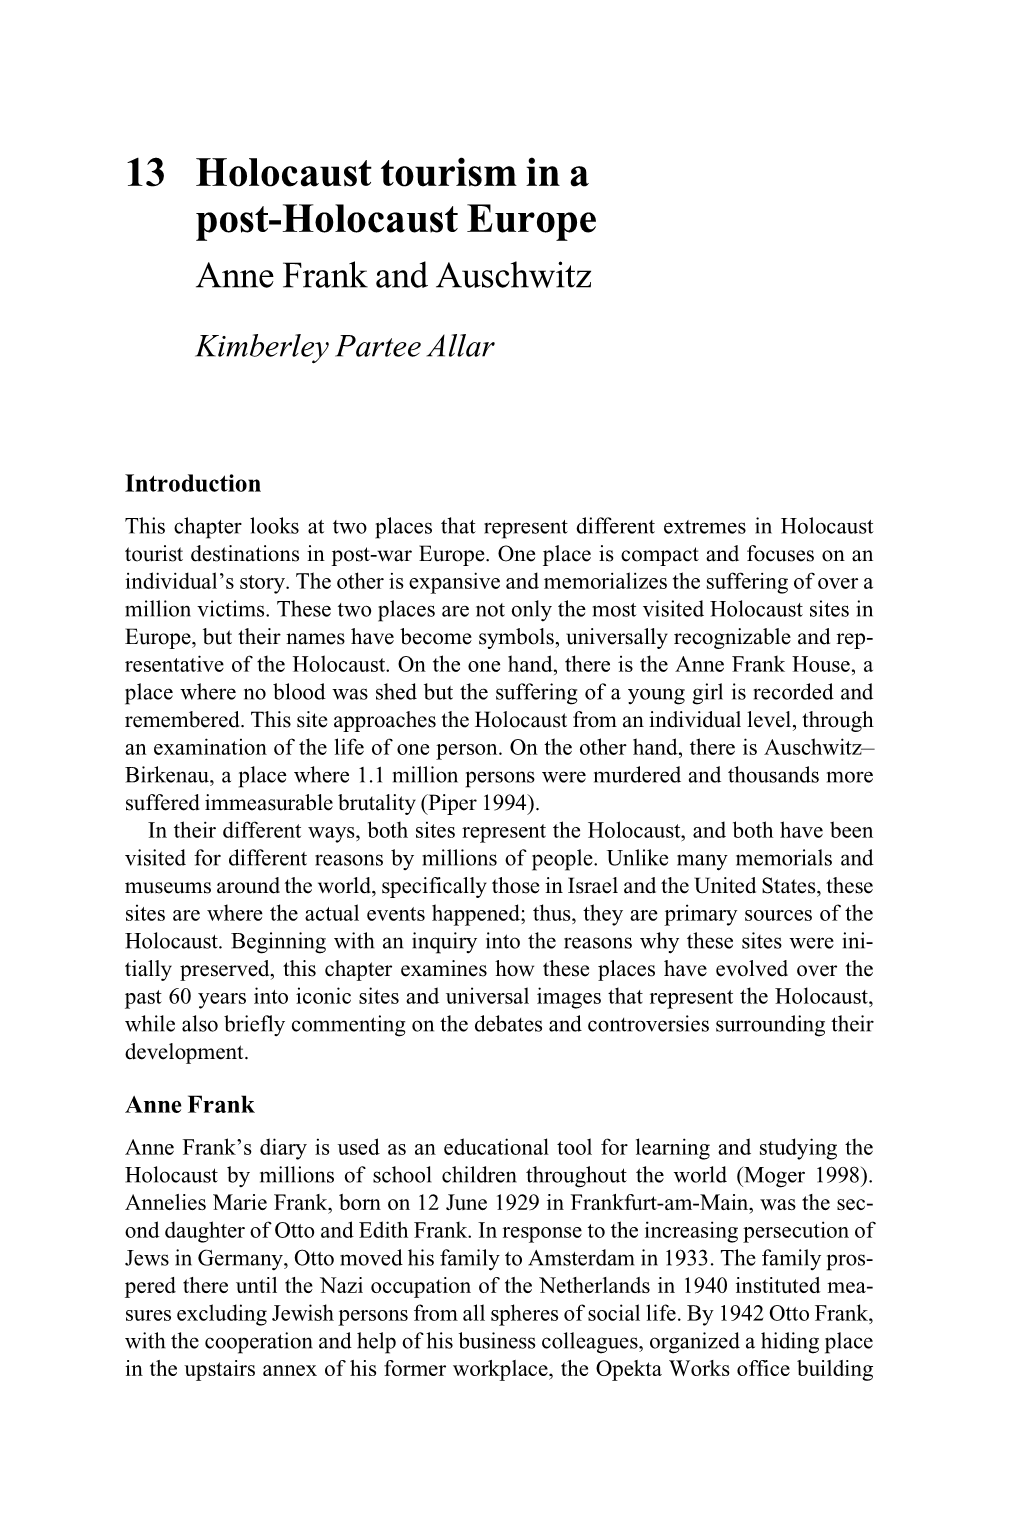 Anne Frank and Auschwitz